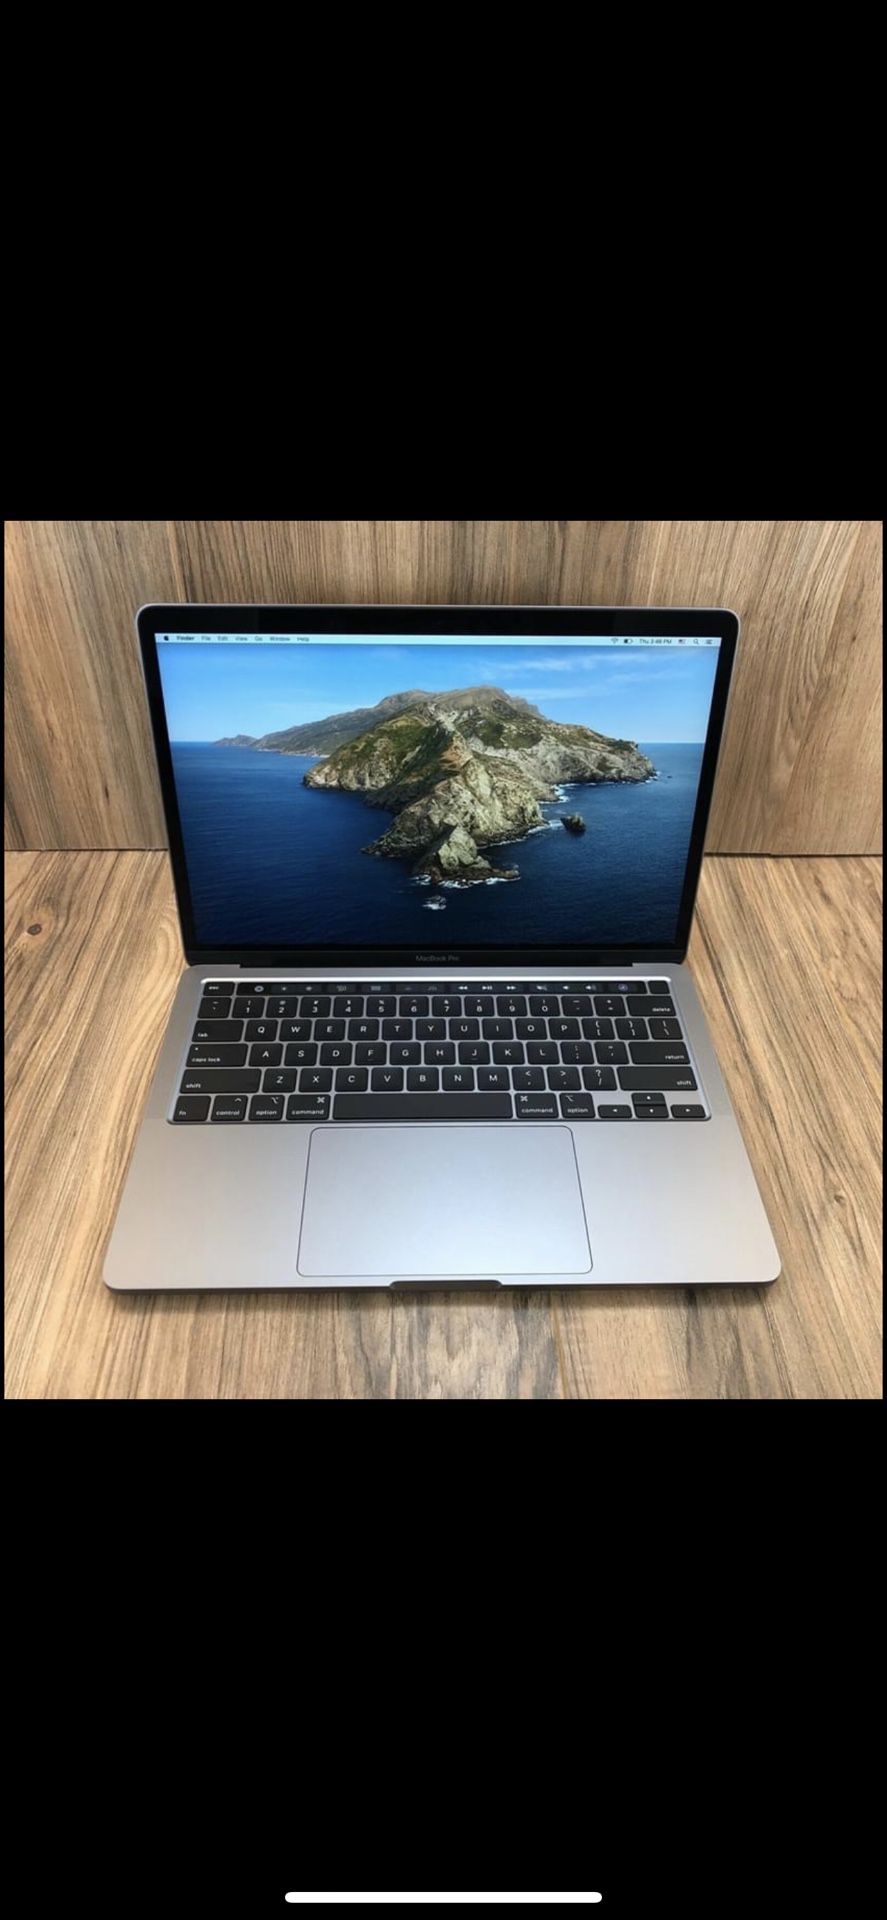 2020 MacBook Pro 13” $2200 w/tax